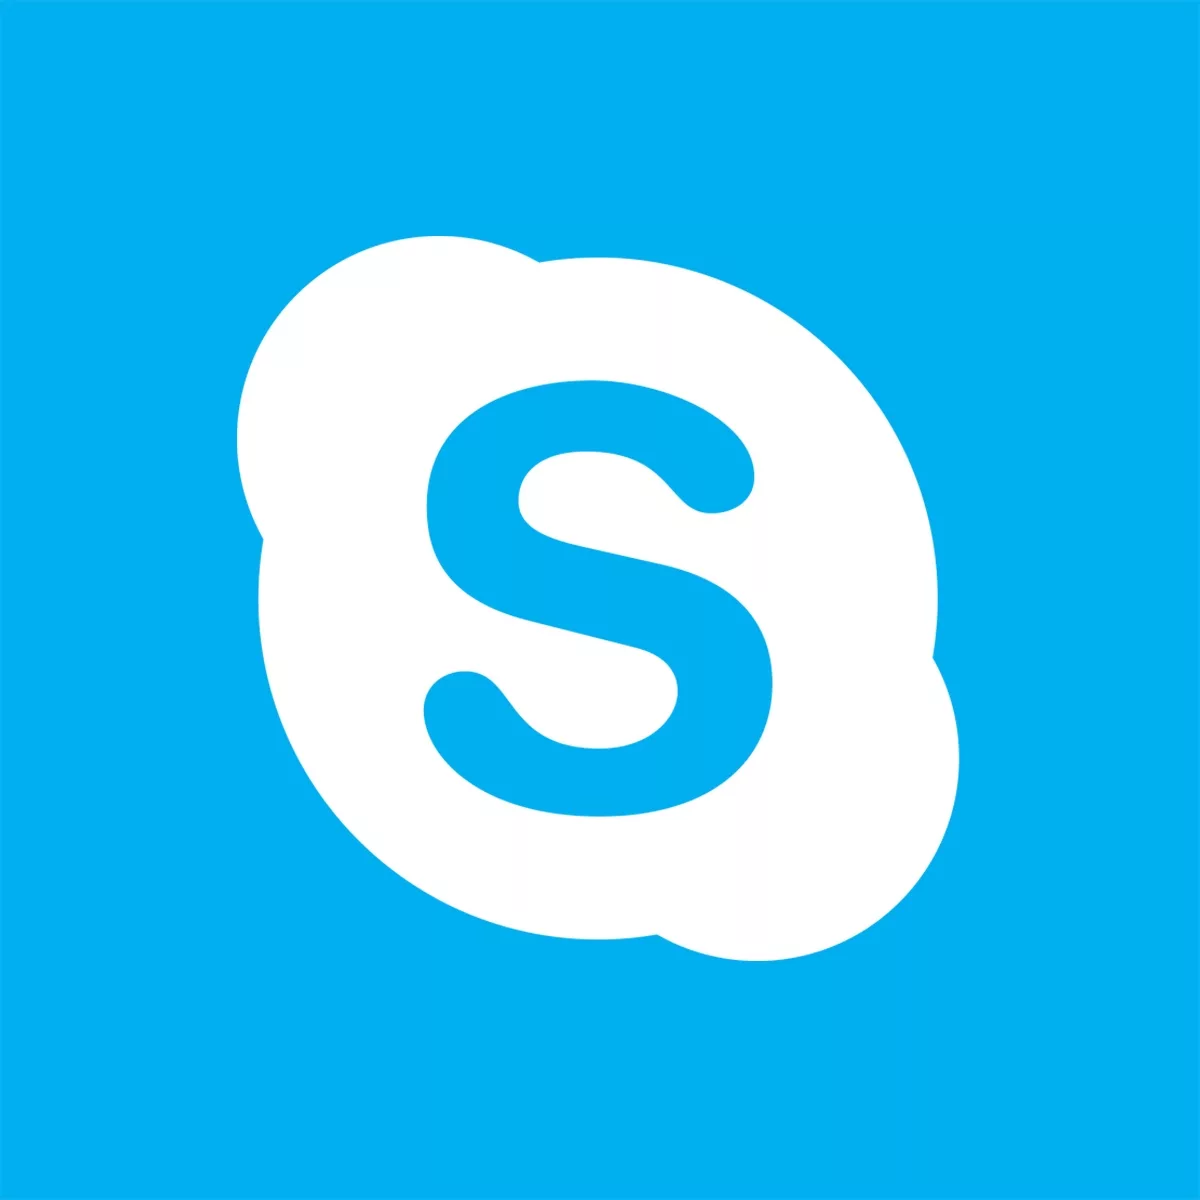 Изображение: ❎ Skype баланс для звонков SFr. 292.78 (CHF)≈$330.00 (USD) с почтой в комплекте ❎ Читаем описание